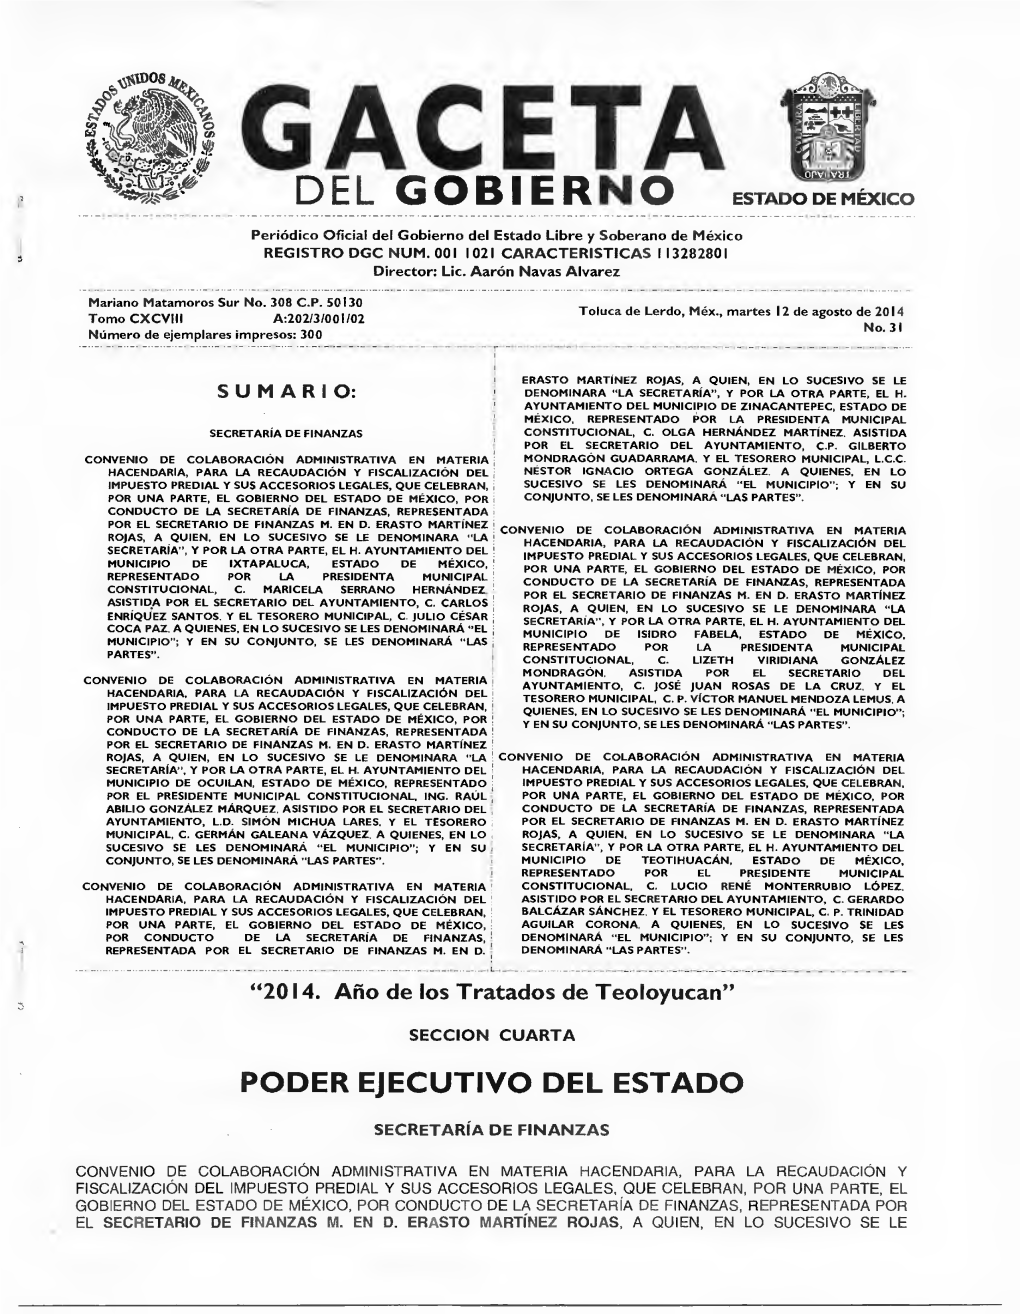 Convenio De Colaboración Administrativa En Materia Mondragón Guadarrama, Y El Tesorero Municipal, L.C.C